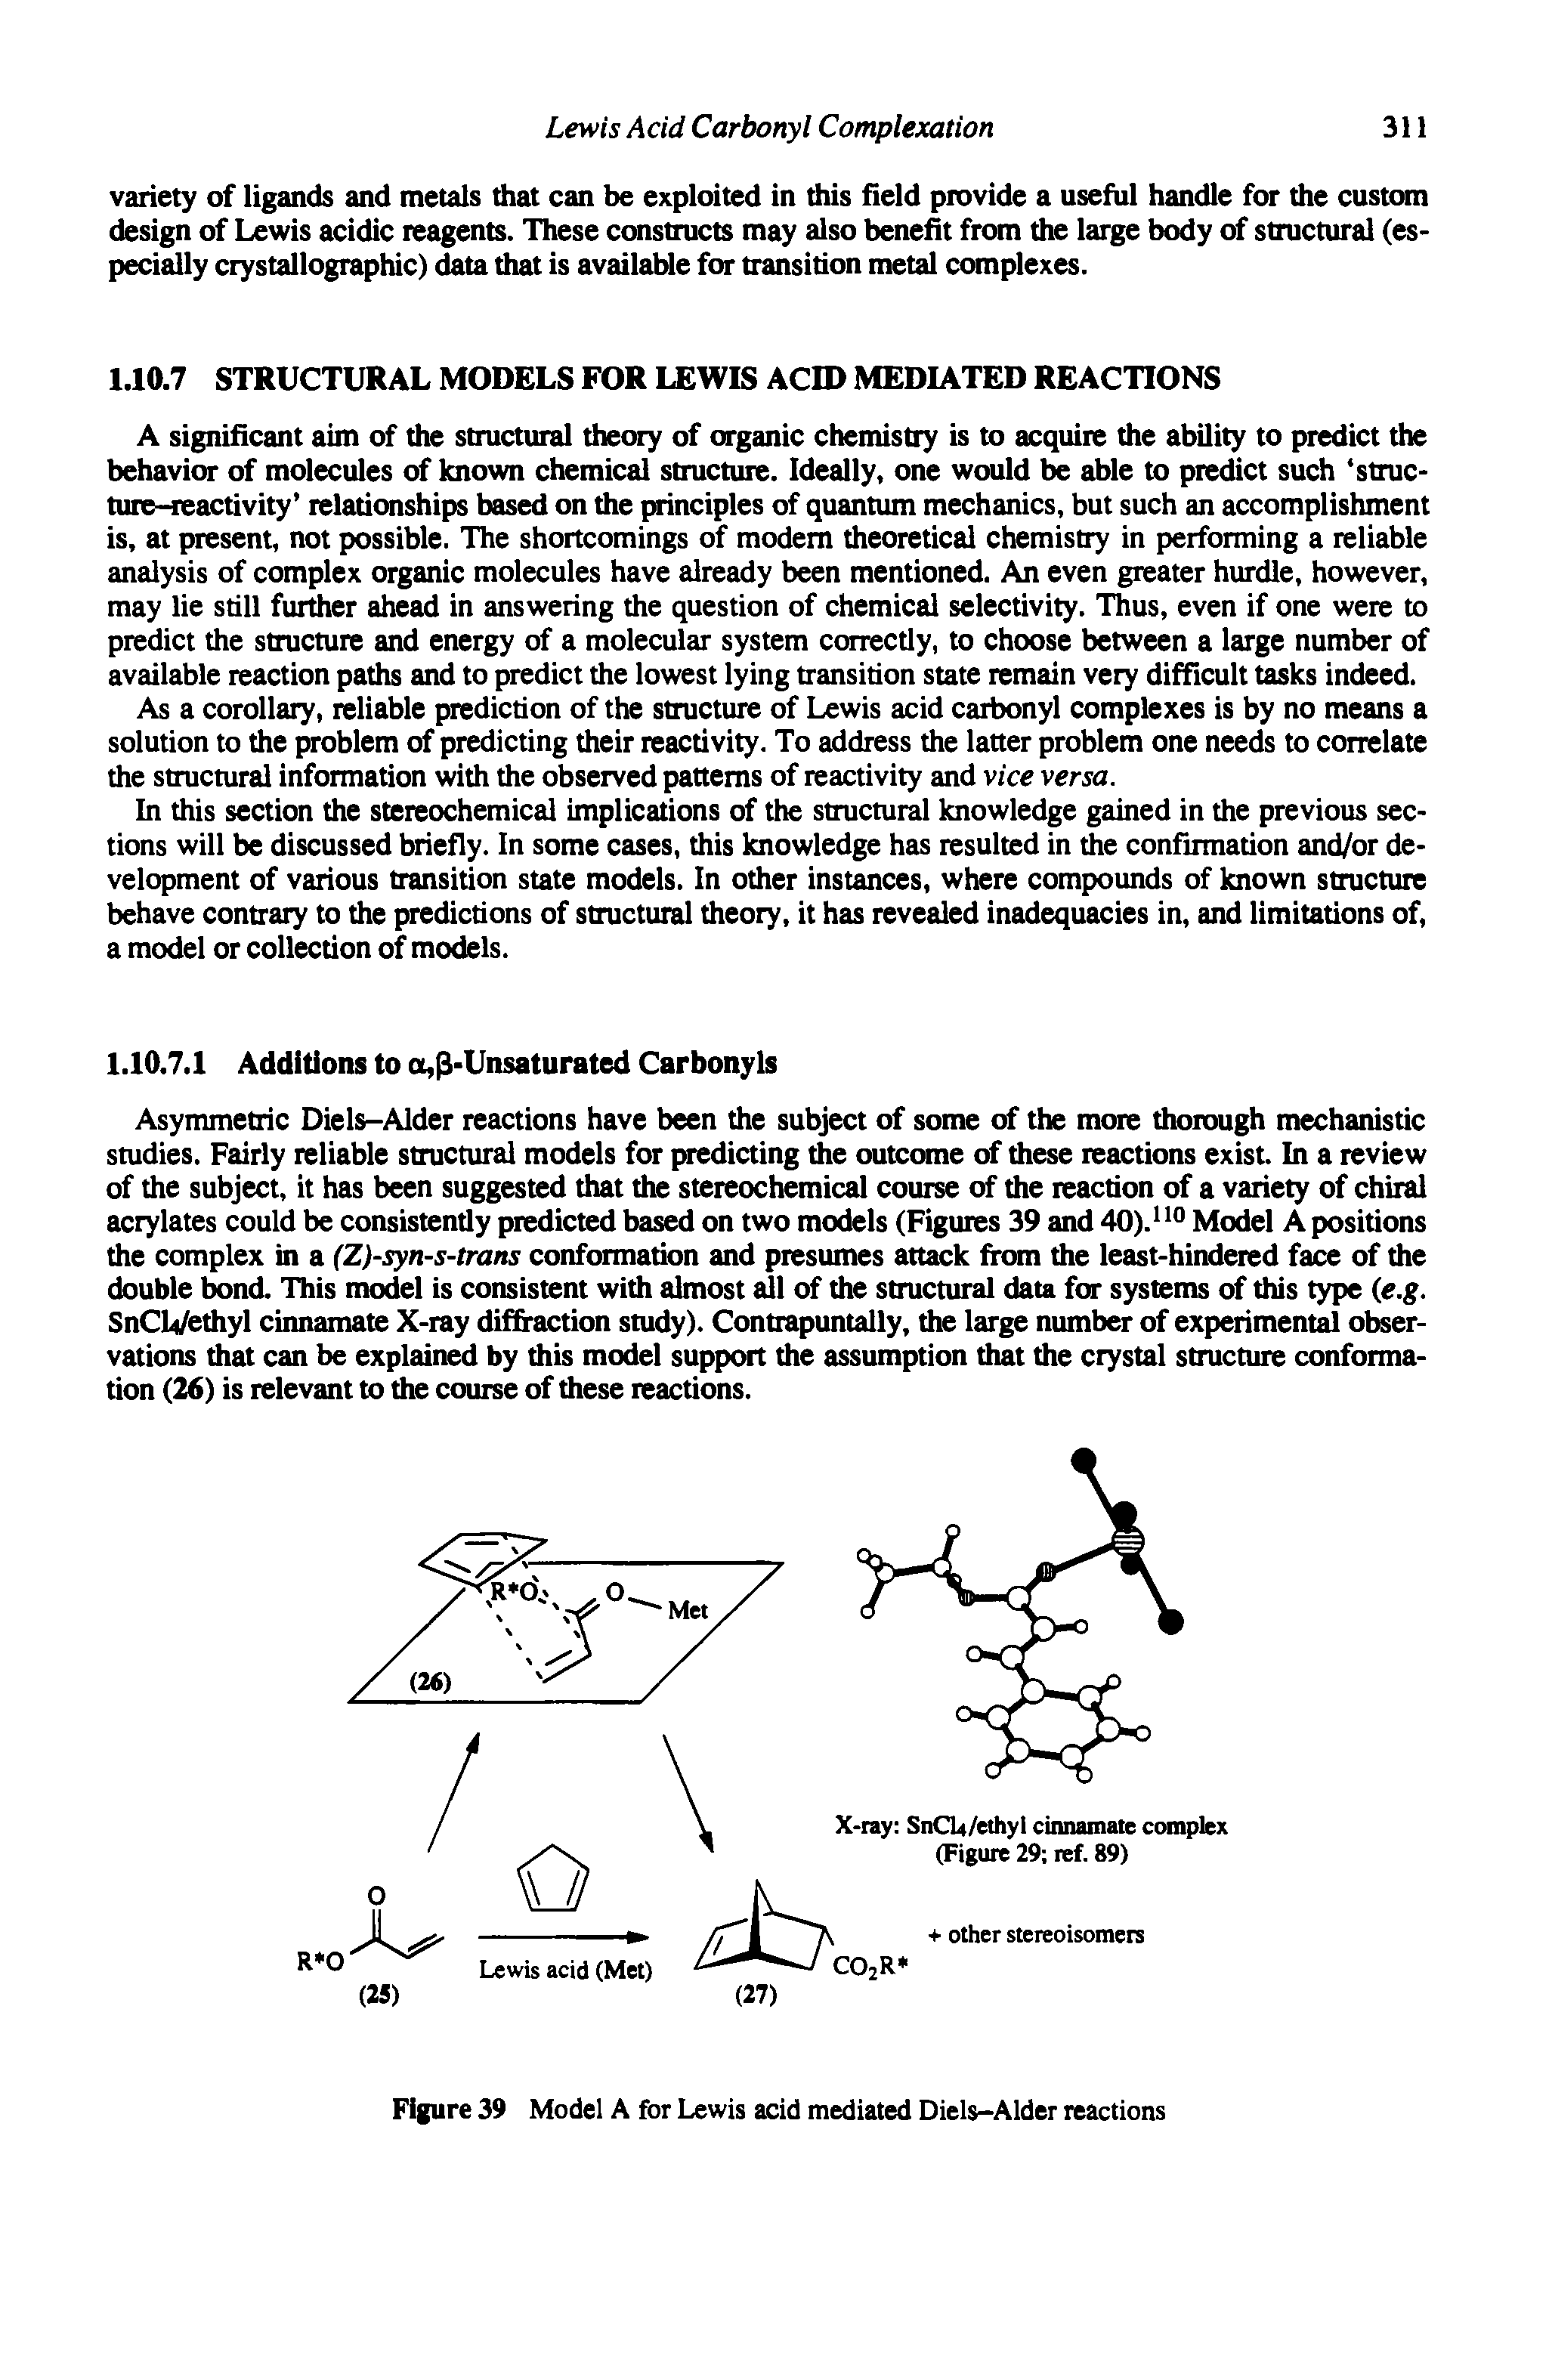 Figure 39 Model A for Lewis acid mediated Diels-Alder reactions...